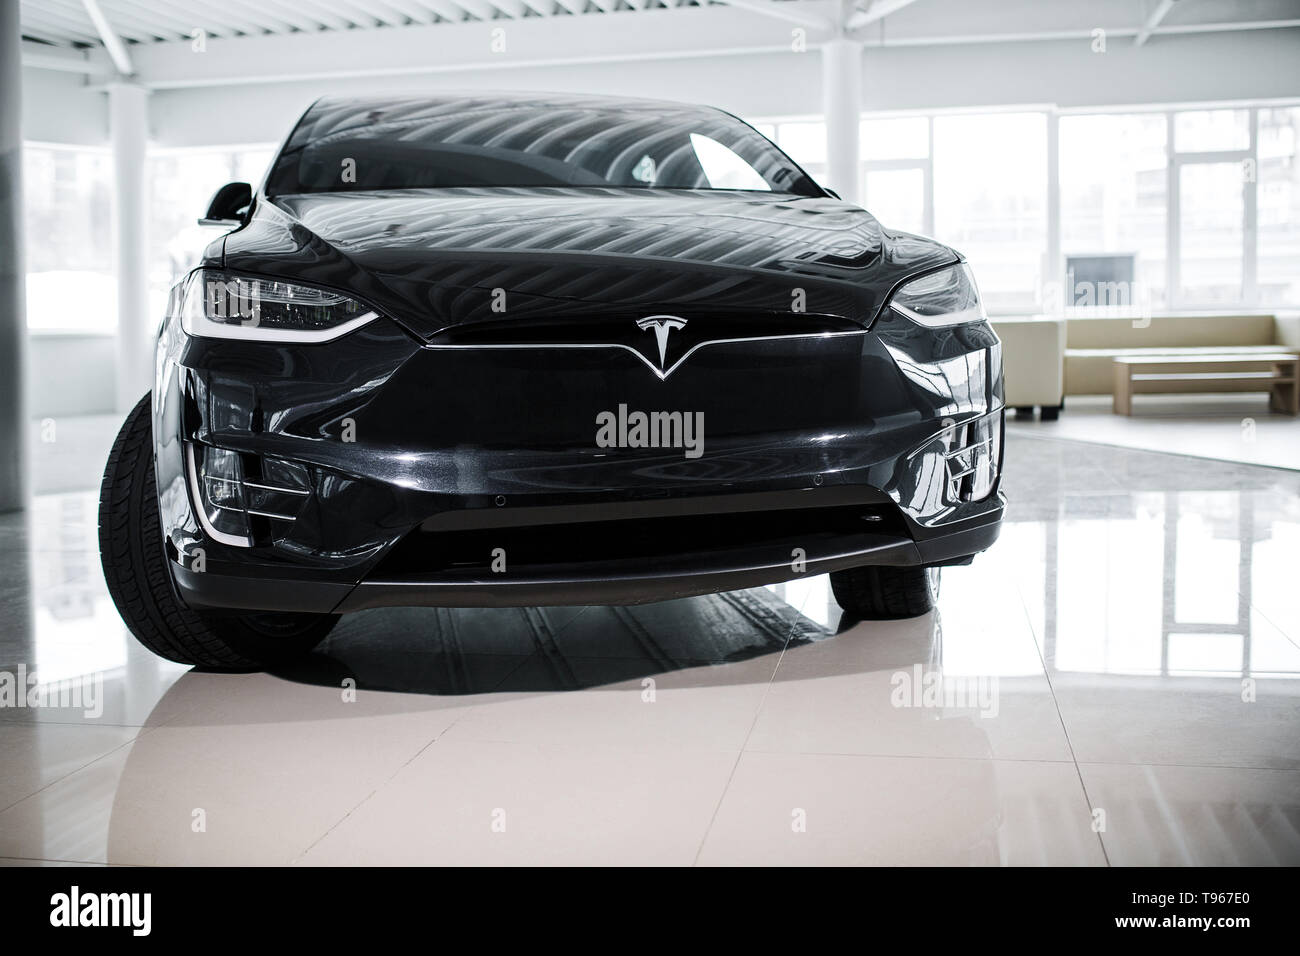 Tesla voiture électrique de nouvelle génération de Dark Brown Piscine Banque D'Images